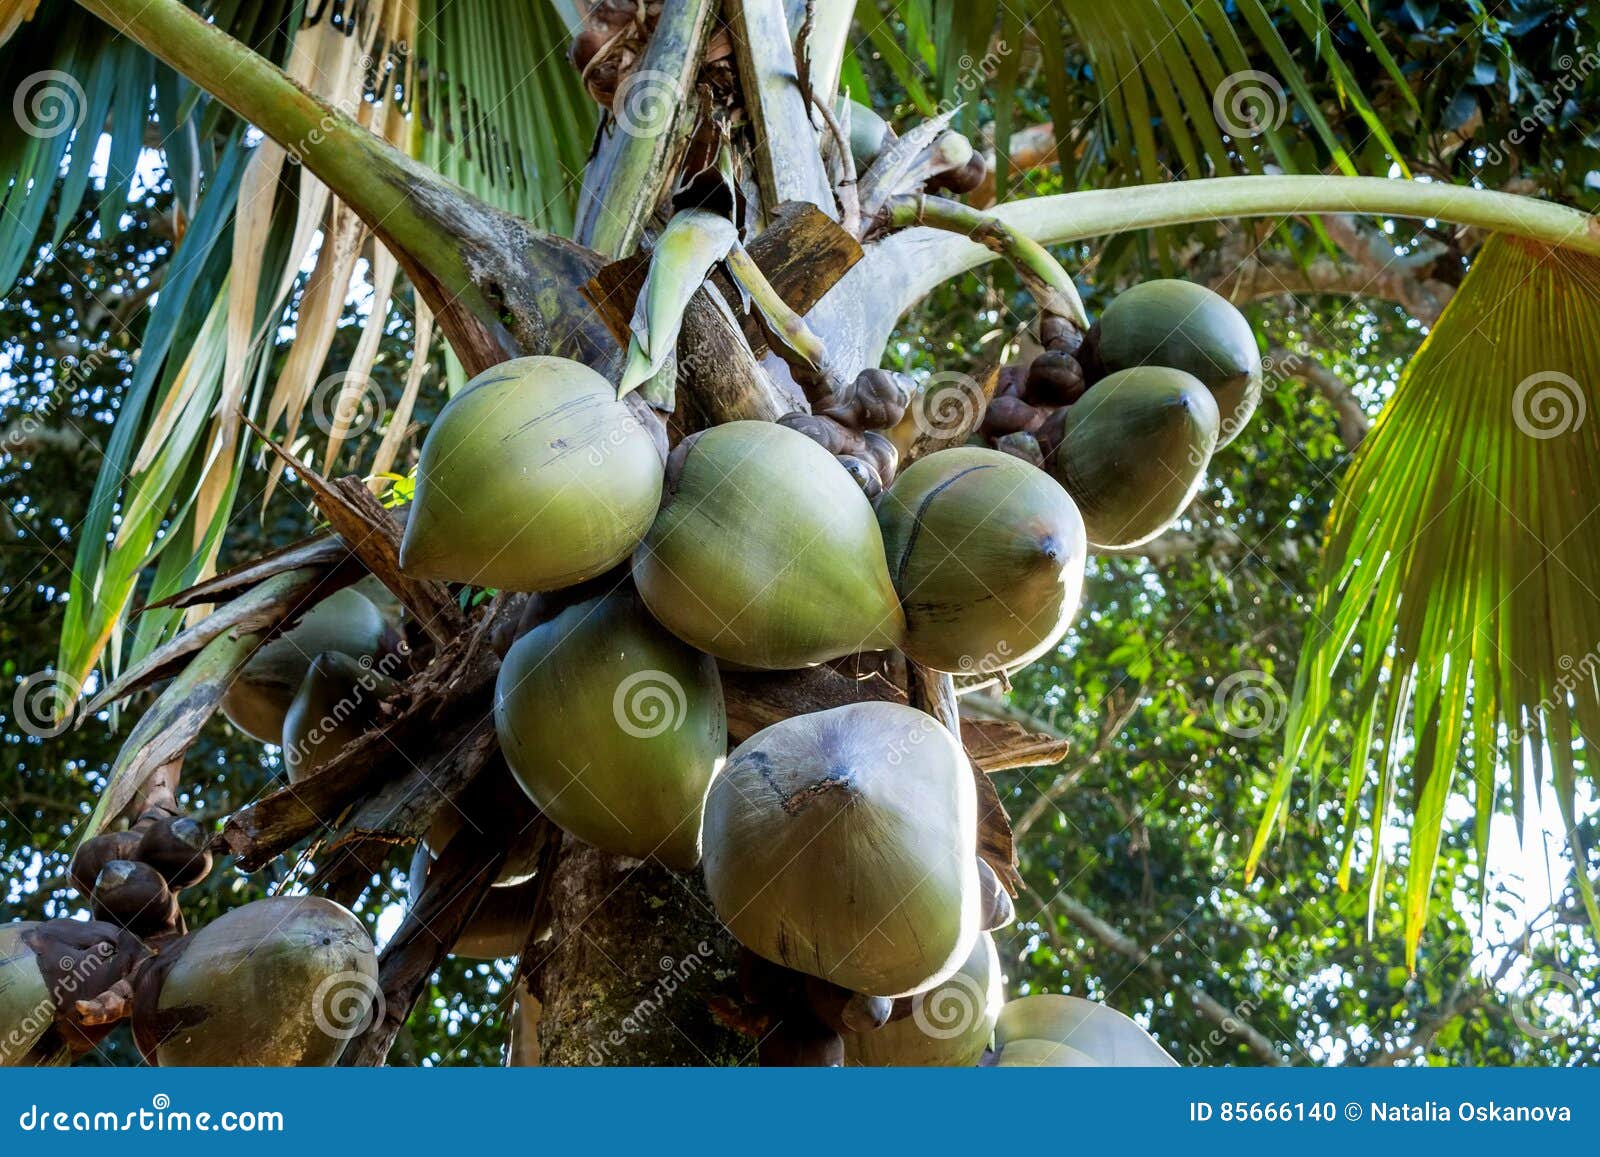 Sea coconut palm trees stock photo. Image of island, asia - 85666140